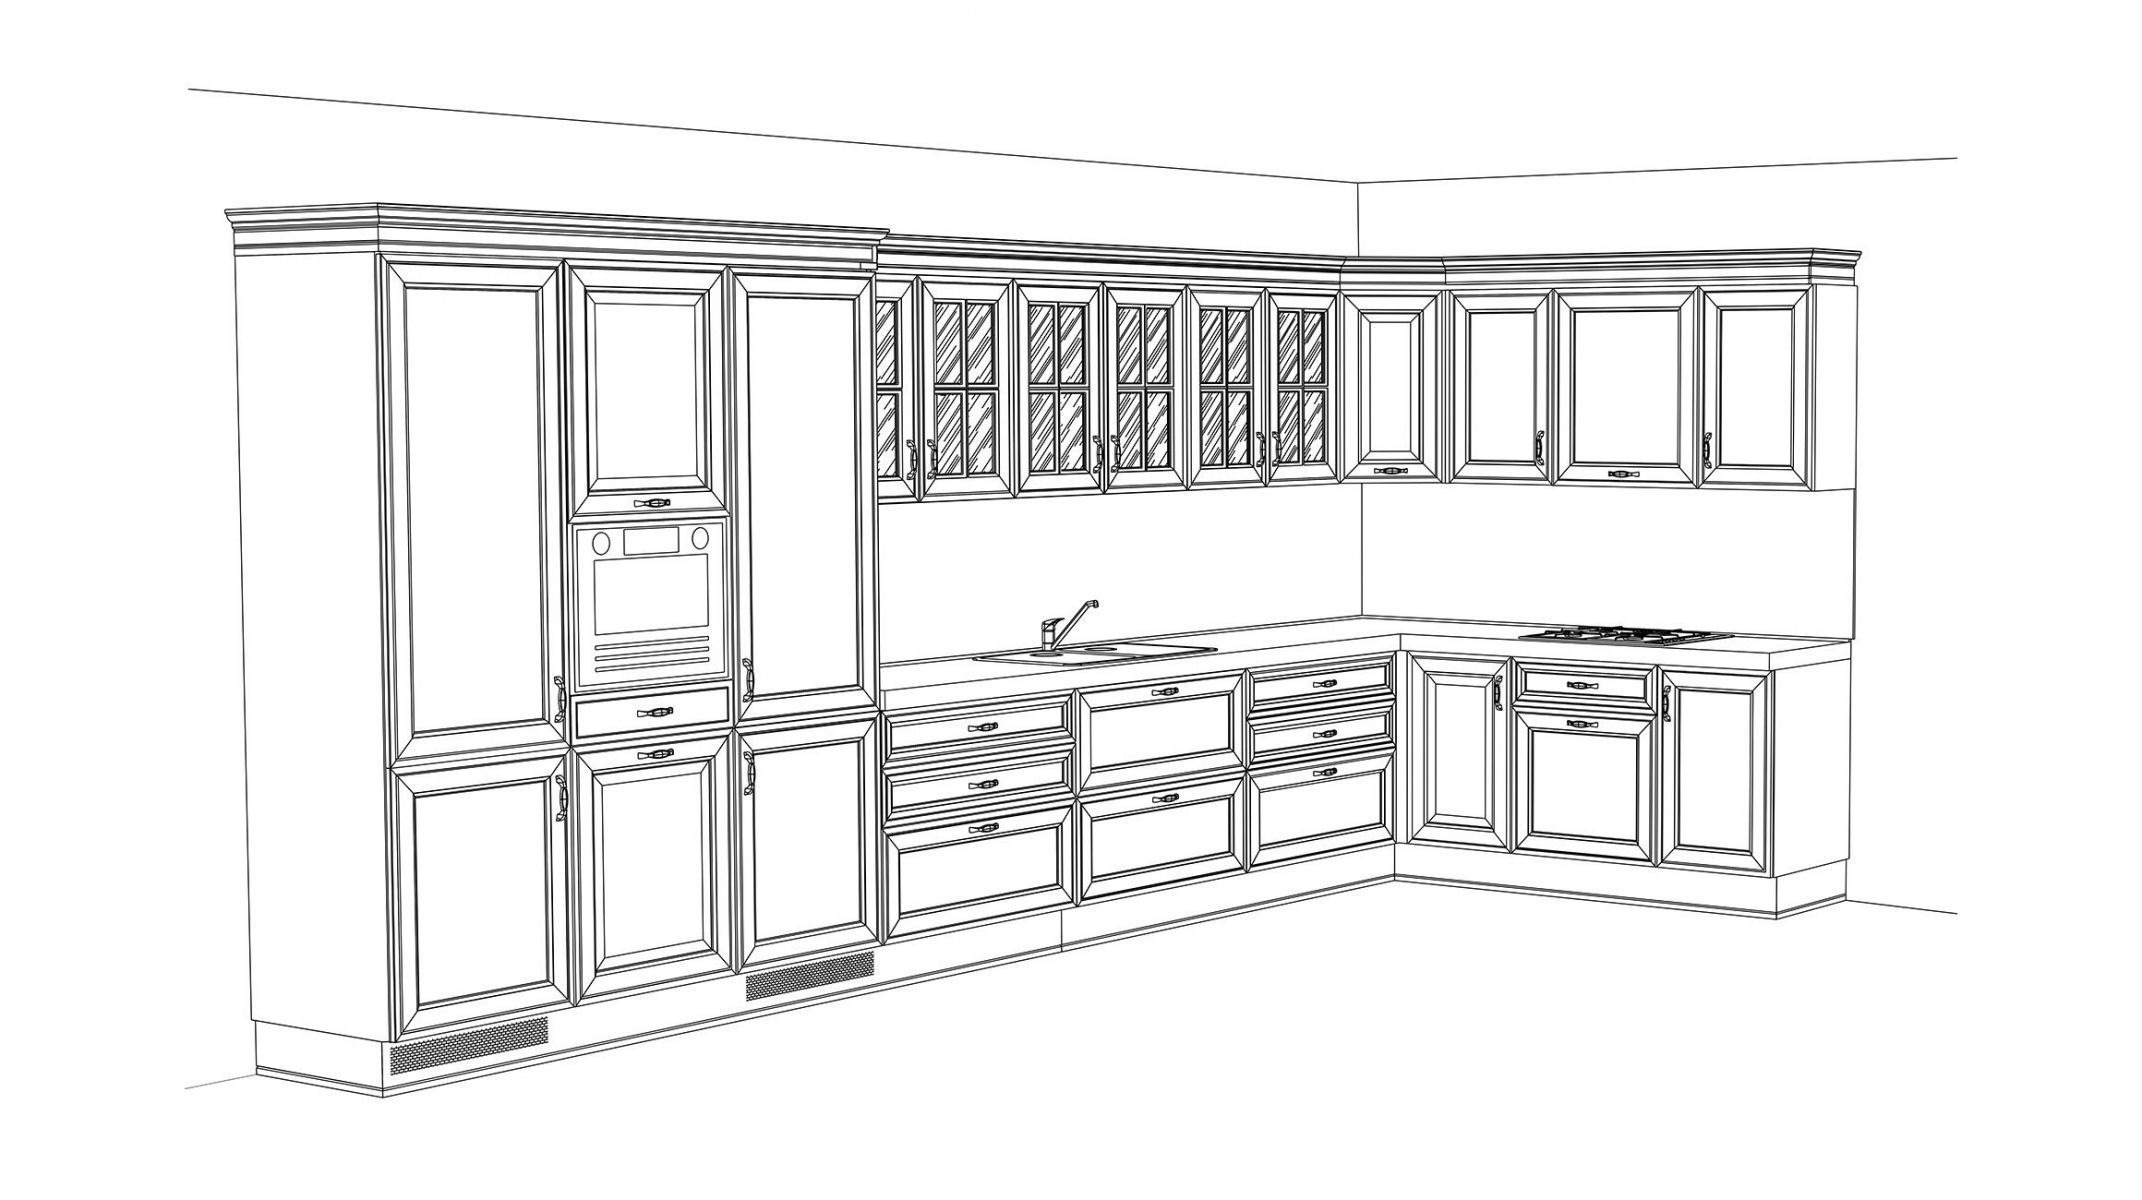 Изображение конфигурации современной кухни Nika